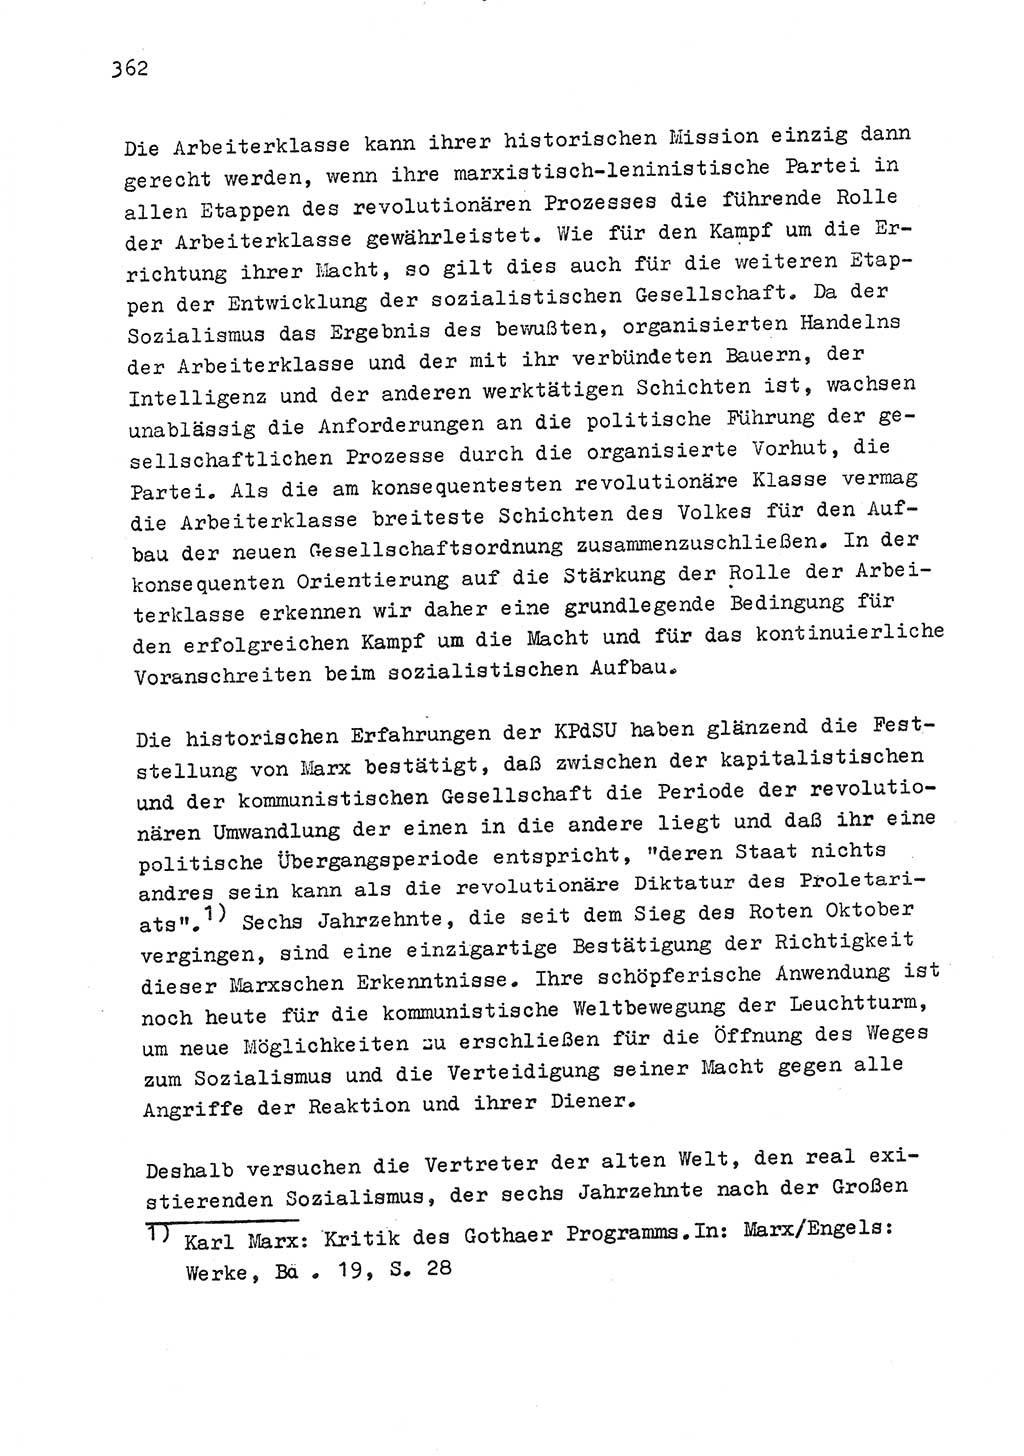 Zu Fragen der Parteiarbeit [Sozialistische Einheitspartei Deutschlands (SED) Deutsche Demokratische Republik (DDR)] 1979, Seite 362 (Fr. PA SED DDR 1979, S. 362)